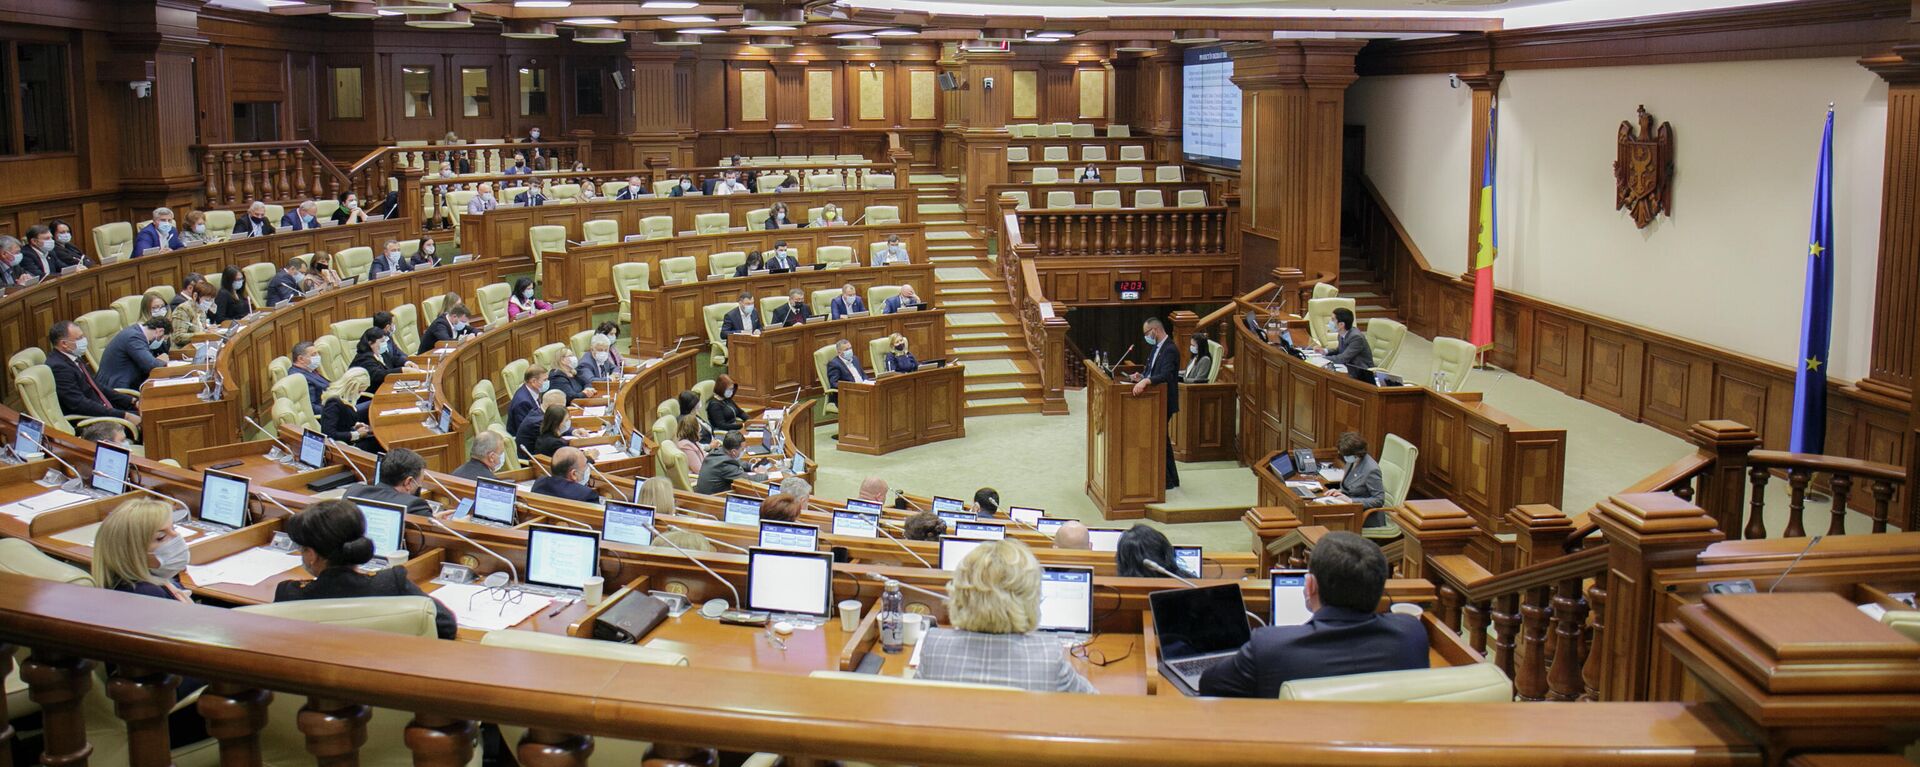 Заседание парламента Молдовы 21 октября 2021 - Sputnik Молдова, 1920, 24.11.2021